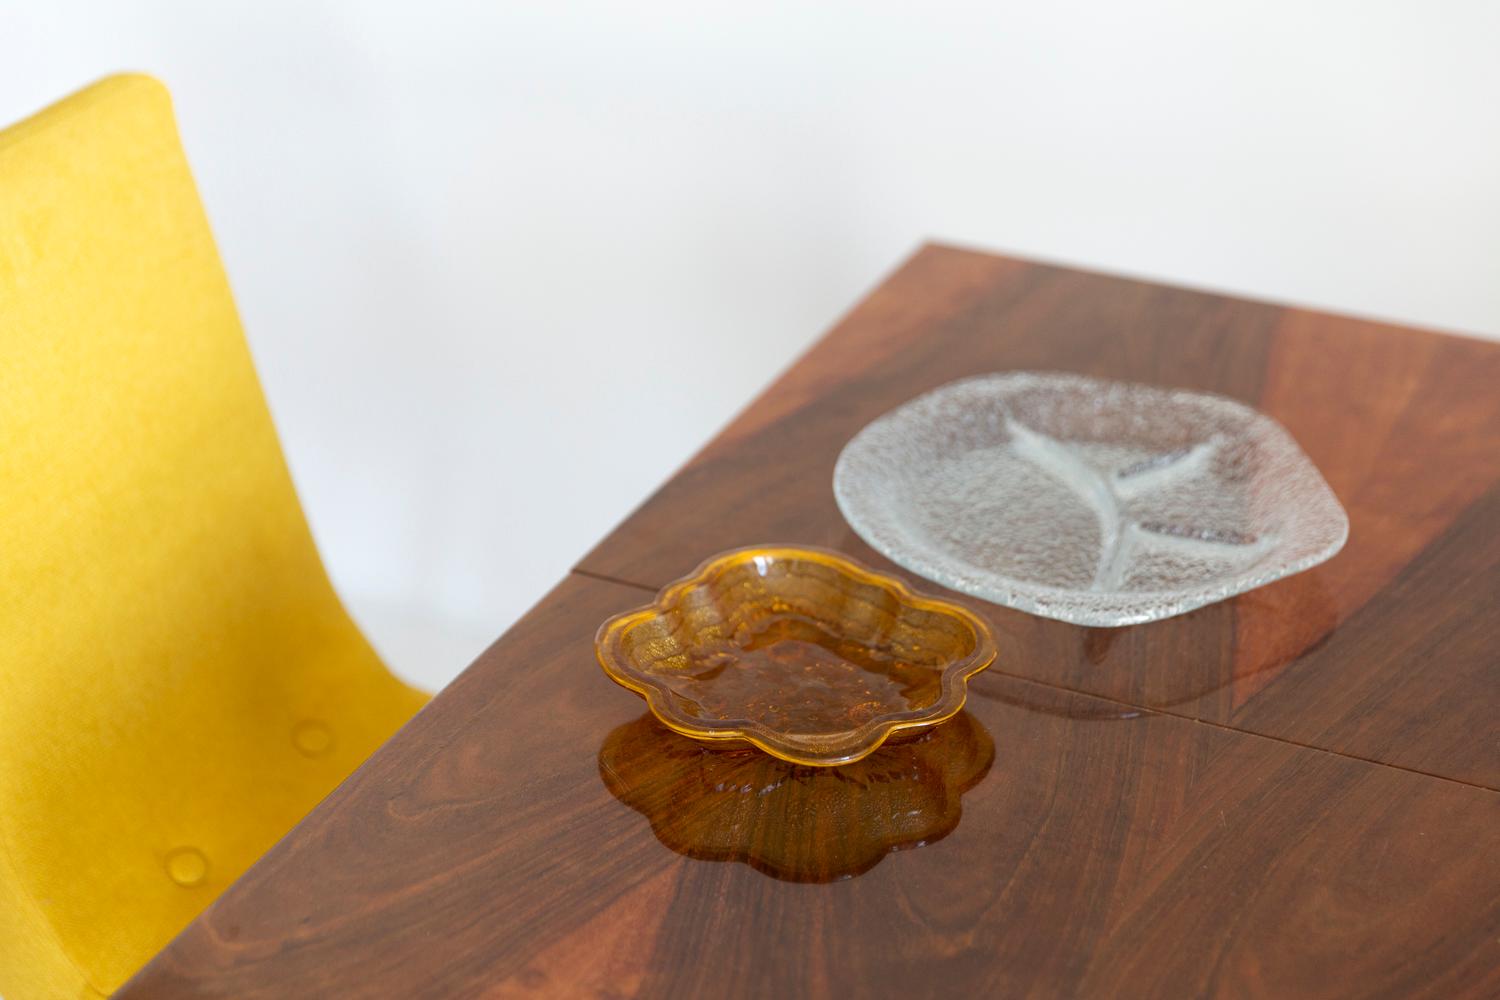 Schöner dekorativer Teller/Schale aus gelbem Kristallglas aus Italien. 
Teller ist in sehr gutem Vintage-Zustand, keine Schäden oder Risse. 
Original Glas. Einzigartiges Stück für jeden Tisch und jede Einrichtung! 
Nur ein Stück verfügbar.